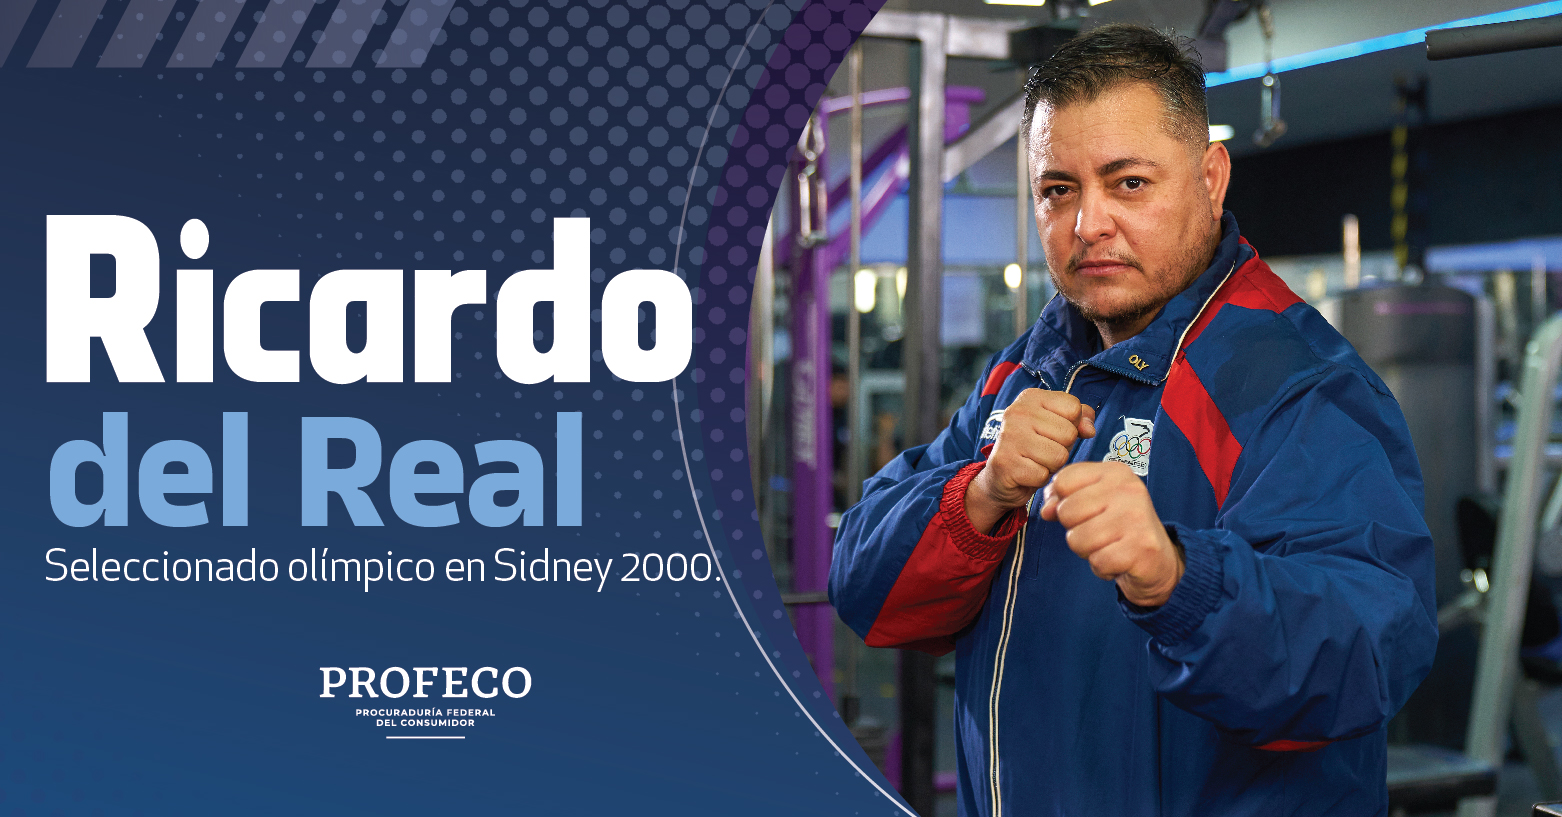 Ricardo del Real, seleccionado olímpico en Sidney 2000